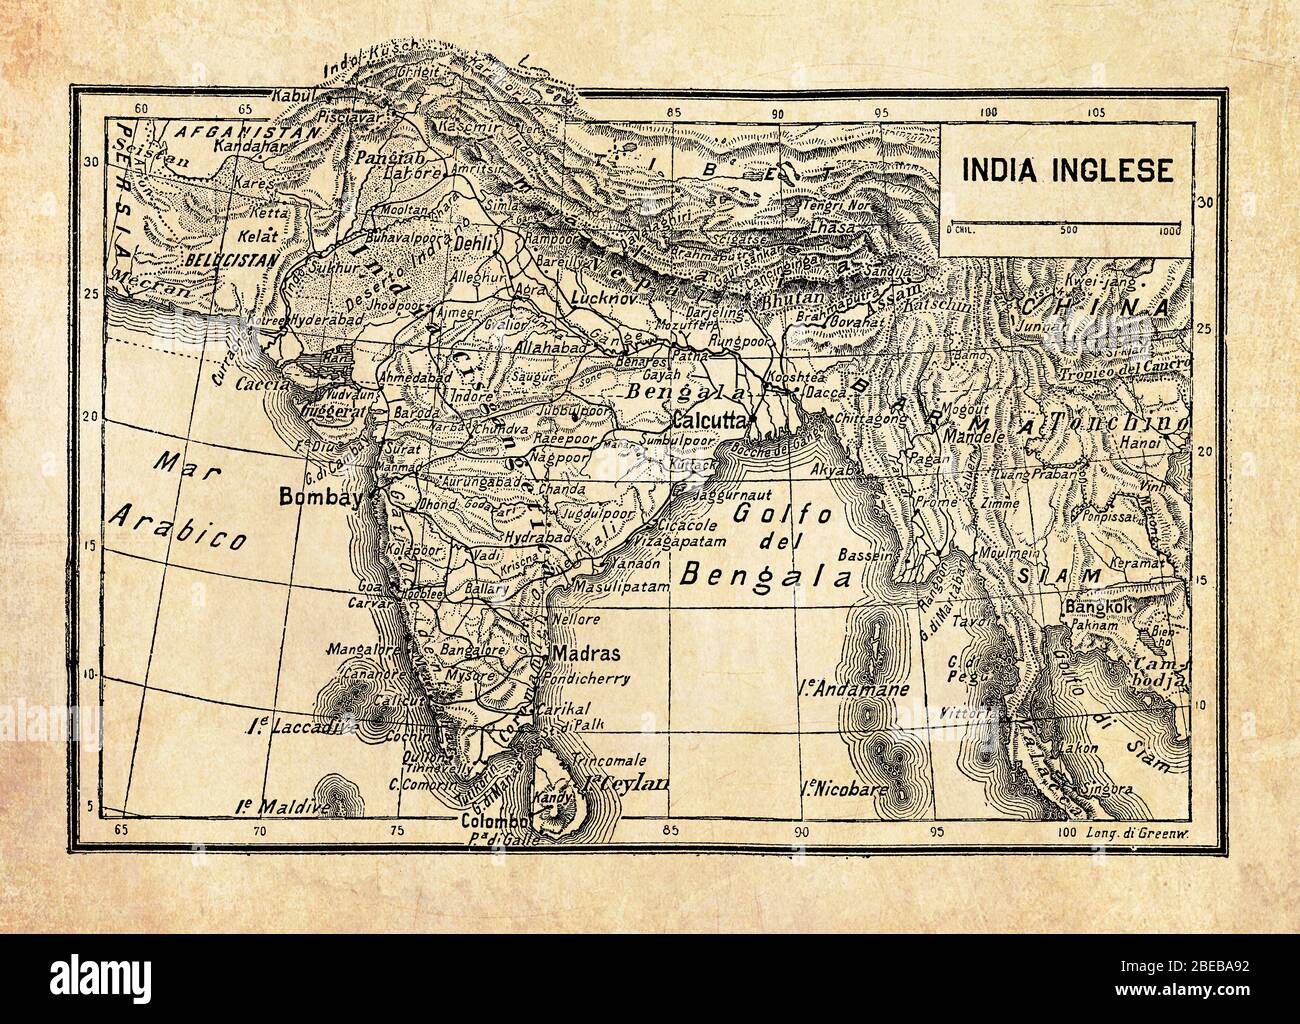 Carte ancienne de l'Empire britannique en Inde ou de l'empire britannique sur le sous-continent indien, formé par l'Inde, le Pakistan et le Bangladesh avec des noms et des descriptions géographiques italiens Banque D'Images